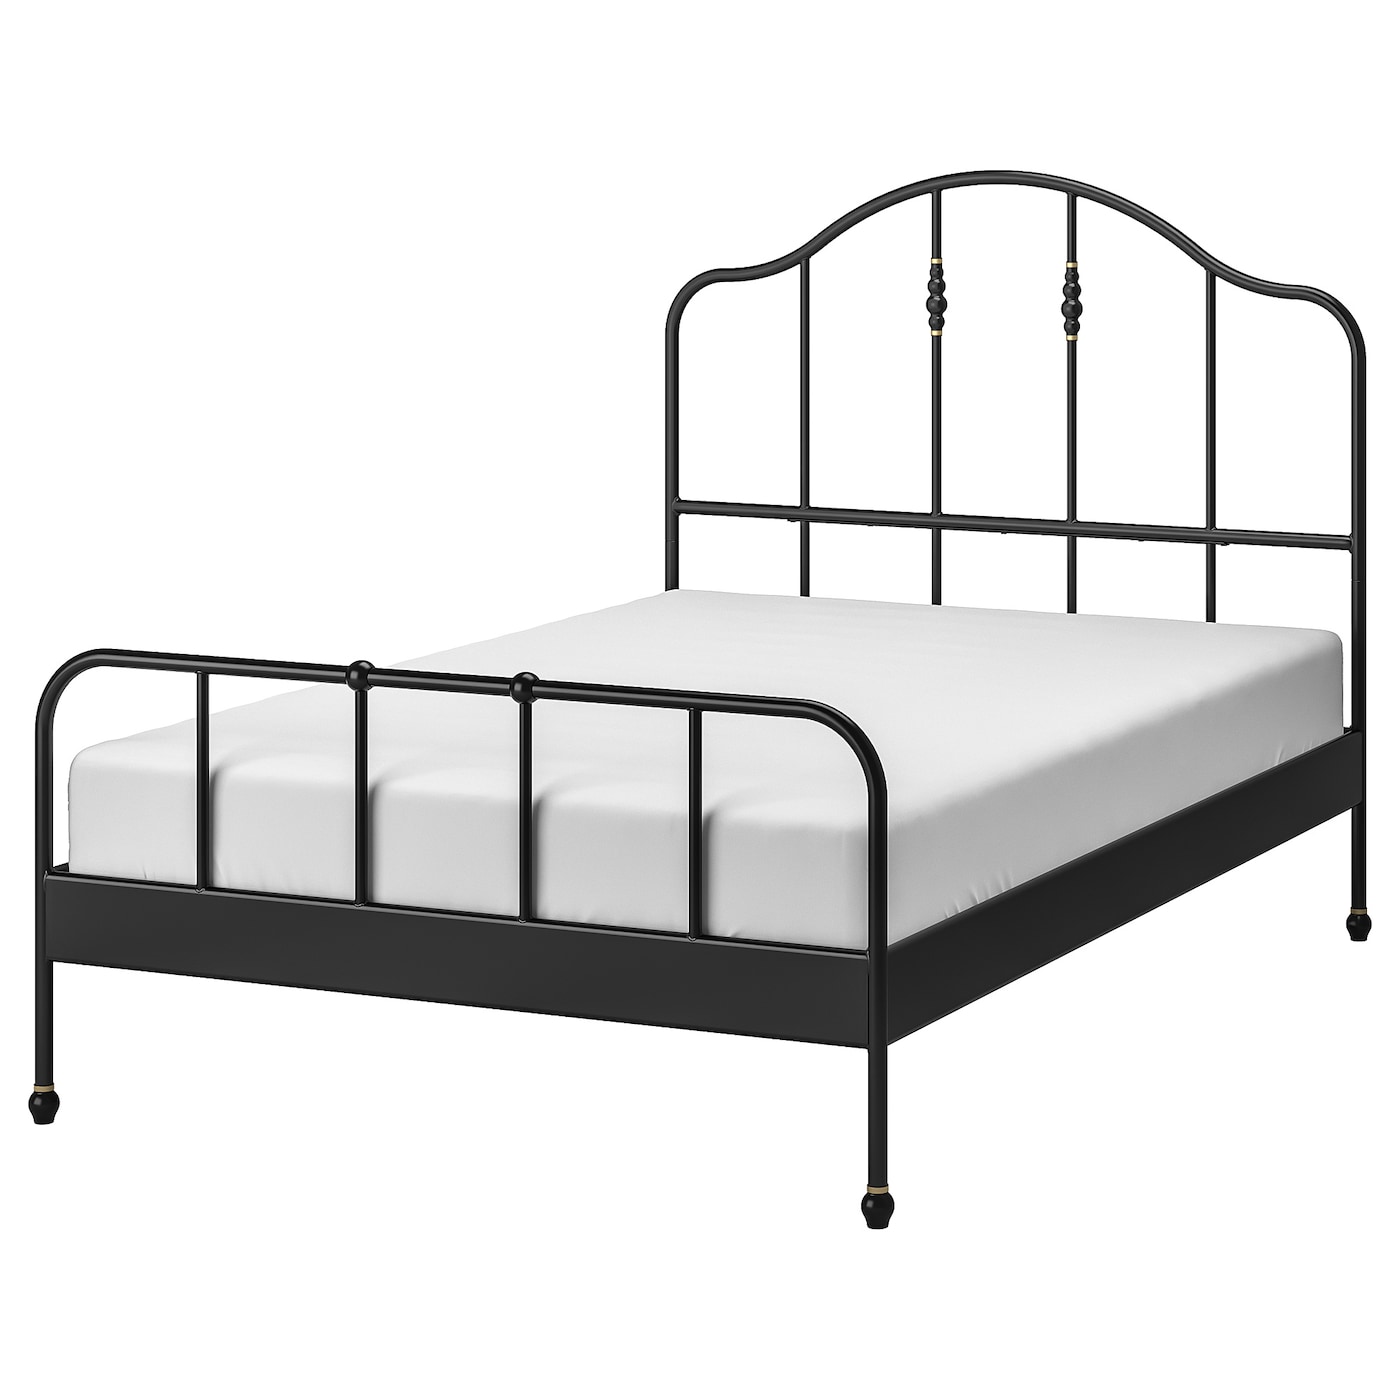 Двуспальная кровать - IKEA SAGSTUA/LURÖY/LUROY, 200х140 см, черный, САГСТУА/ЛУРОЙ ИКЕА